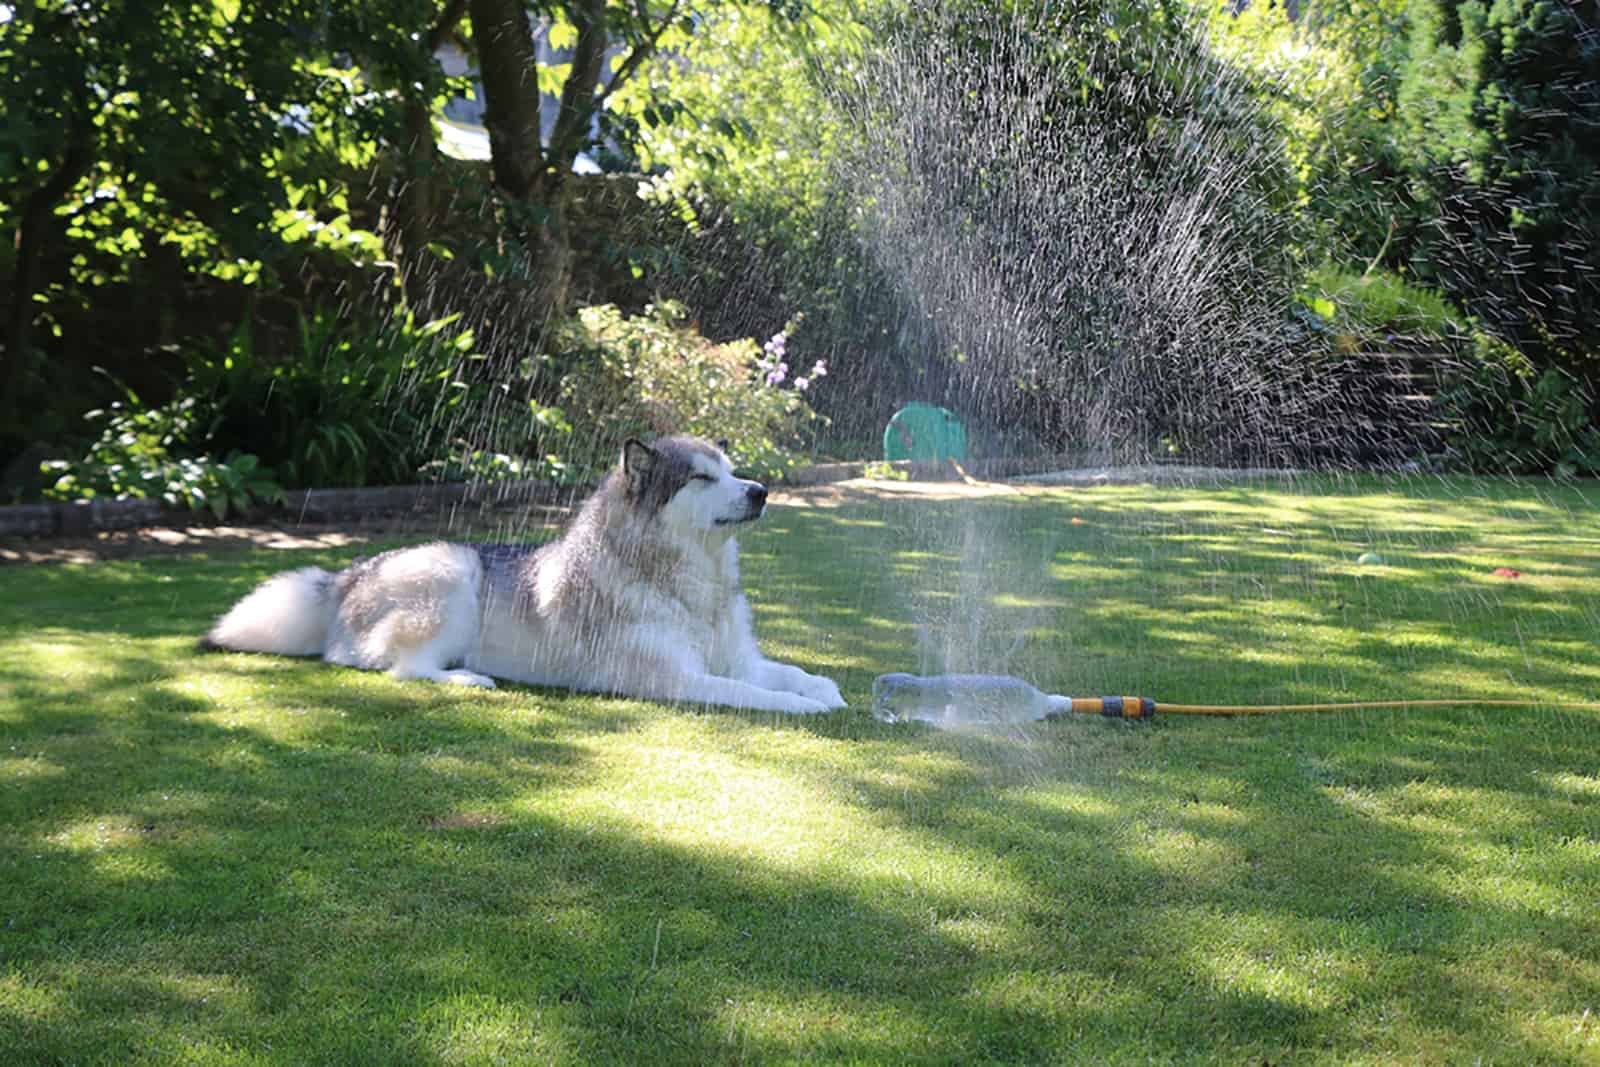 alaskan malamute dog cooling down under sprinkler